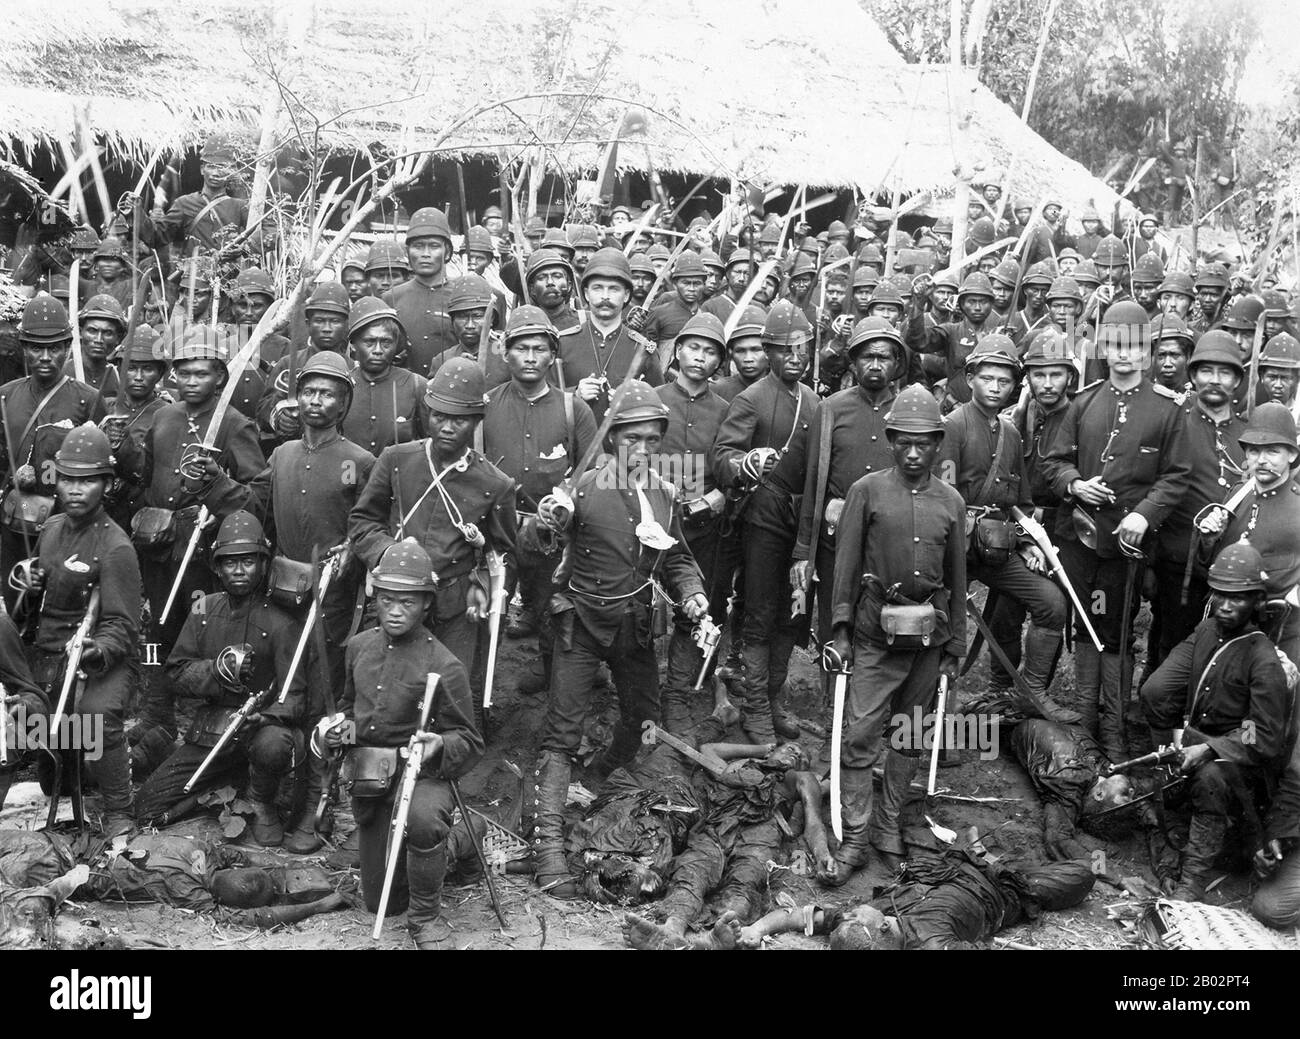 La guerre d'Aceh, également connue sous le nom de guerre néerlandaise ou de guerre Infidale (1873–1914), était un conflit militaire armé entre le Sultanat d'Aceh et les Pays-Bas, déclenché par des discussions entre les représentants d'Aceh et du Royaume-Uni à Singapour au début de 1873. La guerre faisait partie d'une série de conflits à la fin du XIXe siècle qui ont consolidé la domination néerlandaise sur l'Indonésie moderne. Les Corps Marechausse ont été largement utilisés par les Néerlandais pour lutter contre l'Acehnese pendant la guerre d'Aceh. Il était composé de soldats néerlandais, sinyo (indo-néerlandais), ambonais, manado, timorais et javanais. Banque D'Images